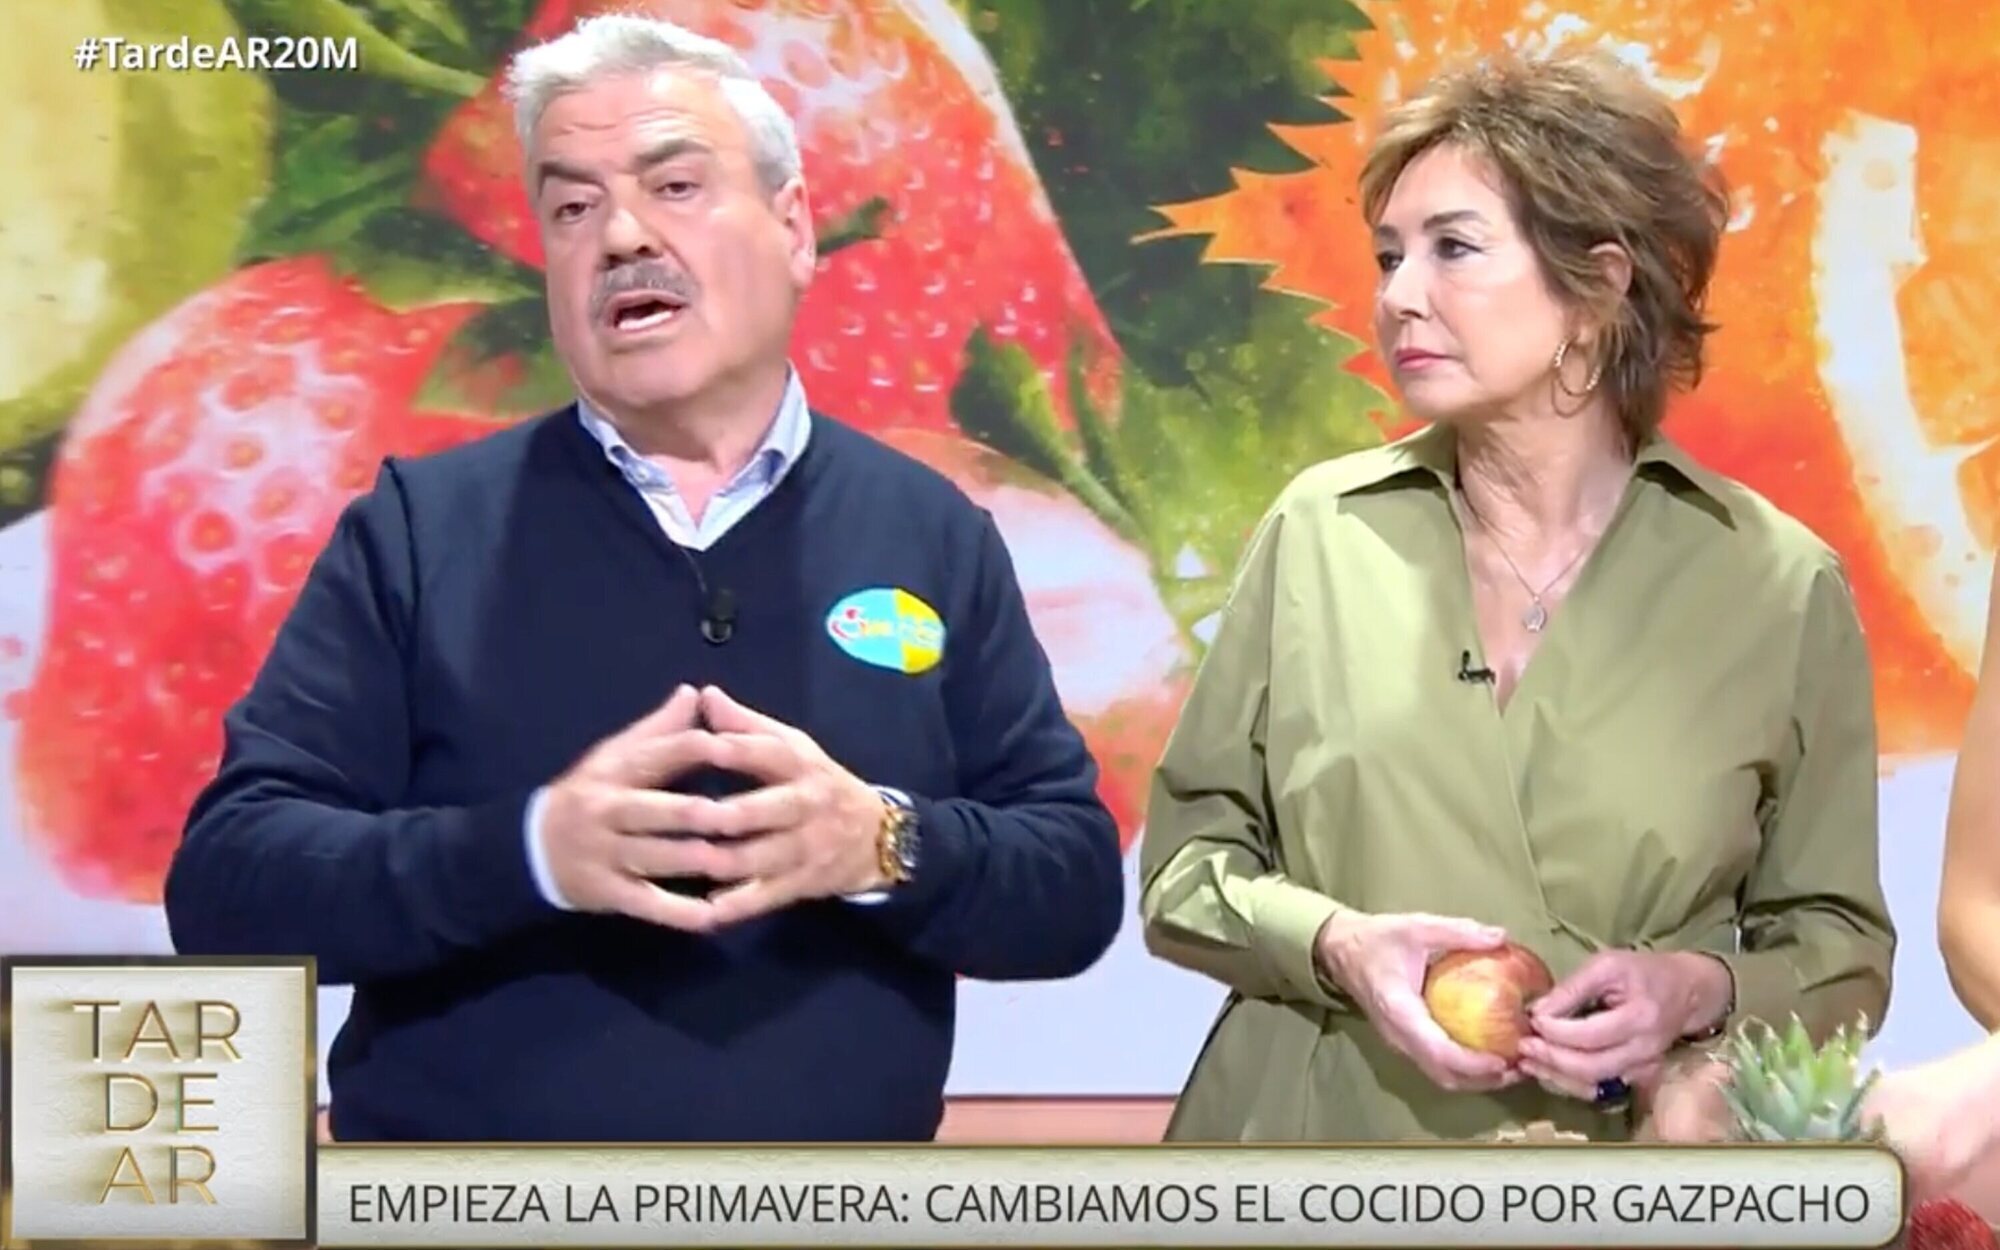 Ana Rosa Quintana cuela el "me gusta la fruta" de Ayuso en 'TardeAR' 